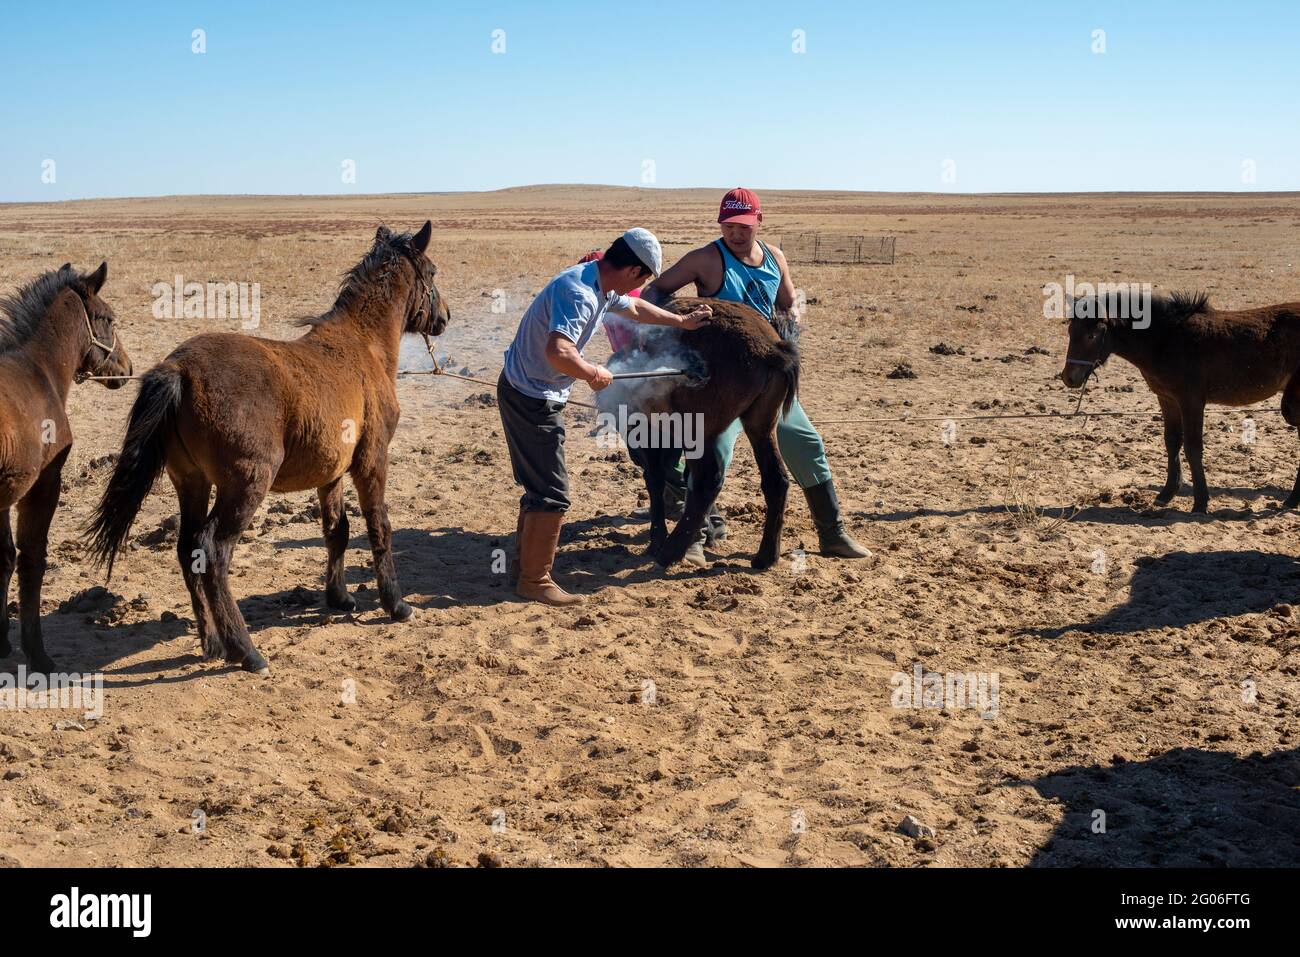 Branding foal o Colt. Nel mese di settembre-ottobre le famiglie nomadi marca giovane cavallo con bollino caldo per dimostrare la proprietà. Dorno-Gobi Aimag. Mongolia Foto Stock